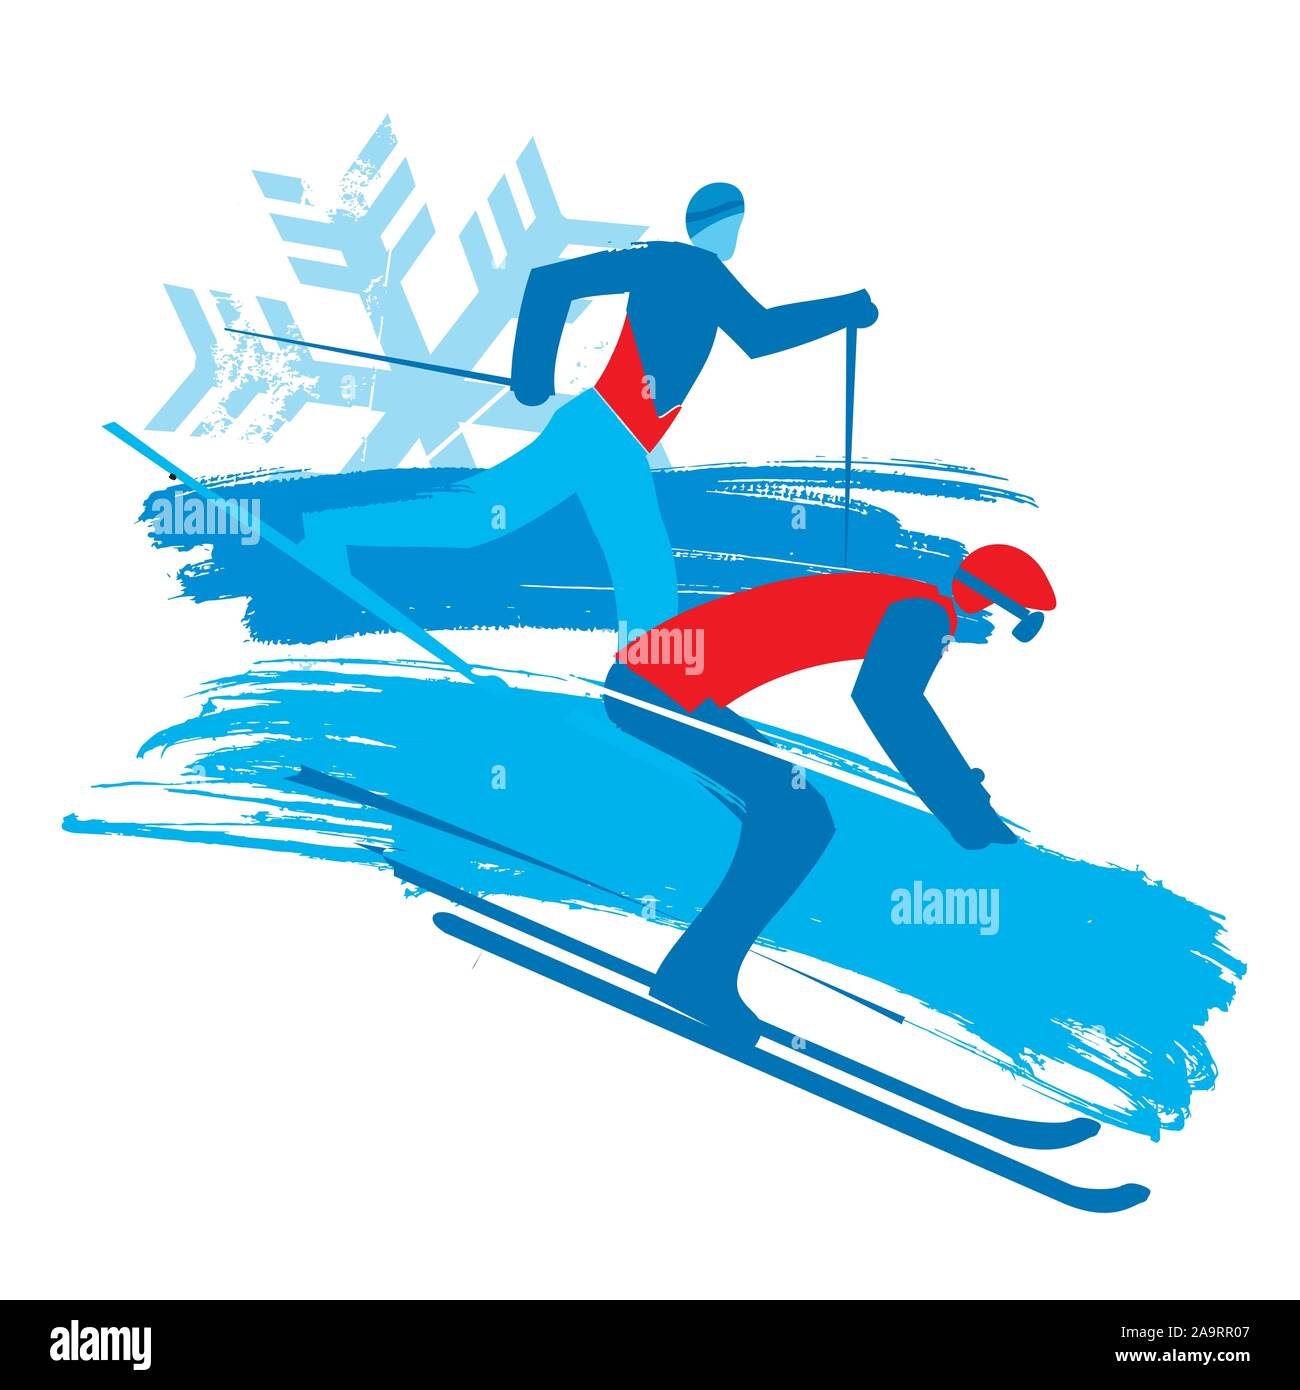 Ski alpin et ski de fond, grunge stylisée. Illustration stylisée de deux skieurs. Isolé sur fond blanc. Vector disponibles. Illustration de Vecteur